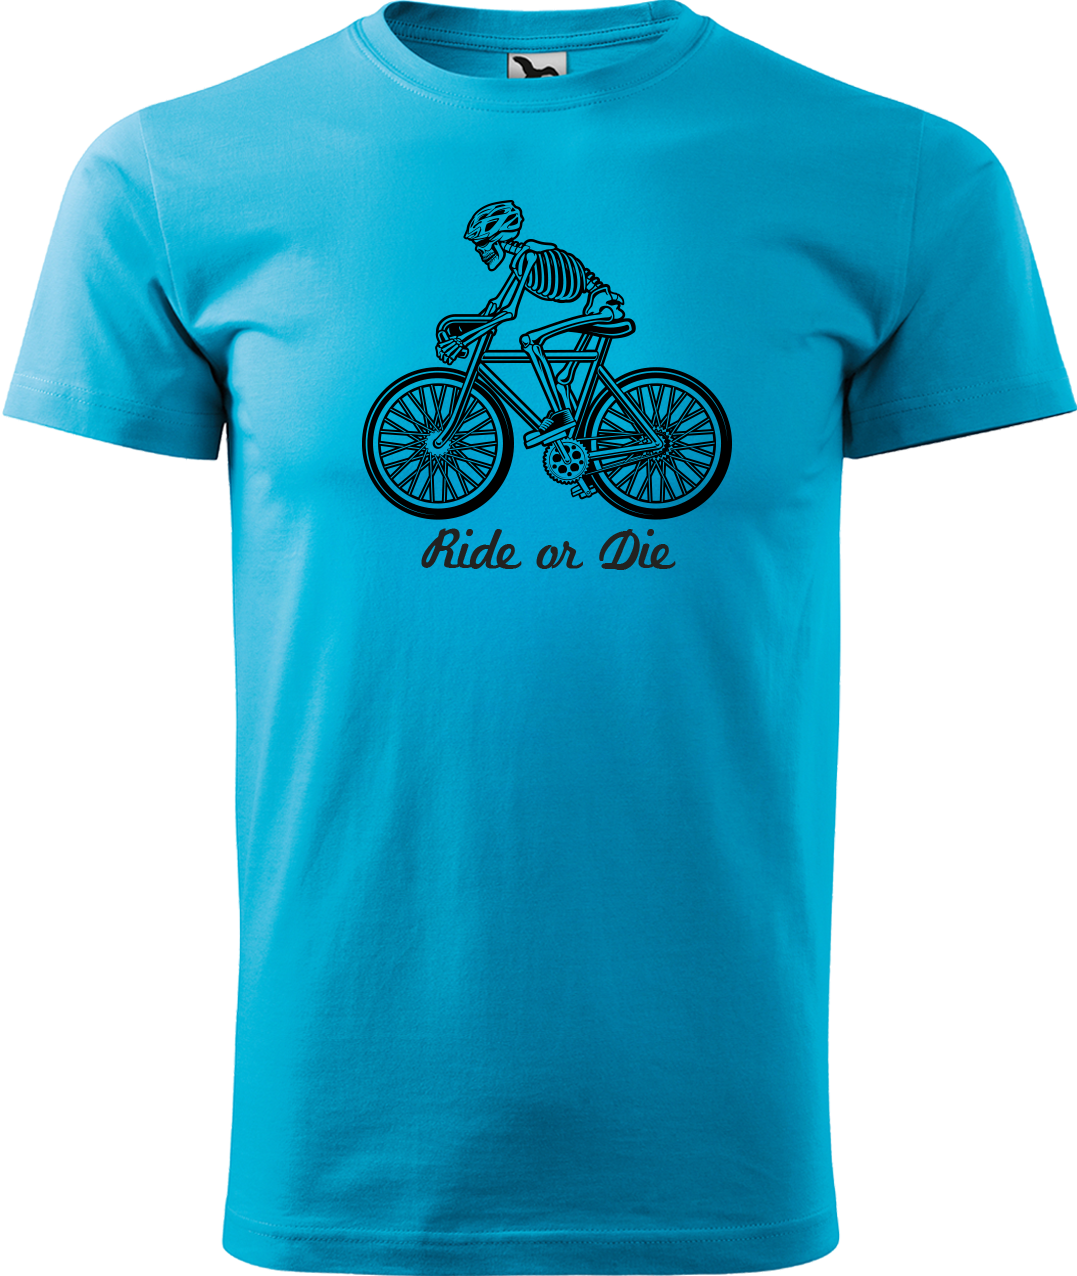 Pánské tričko pro cyklistu - Ride or Die Velikost: S, Barva: Tyrkysová (44)